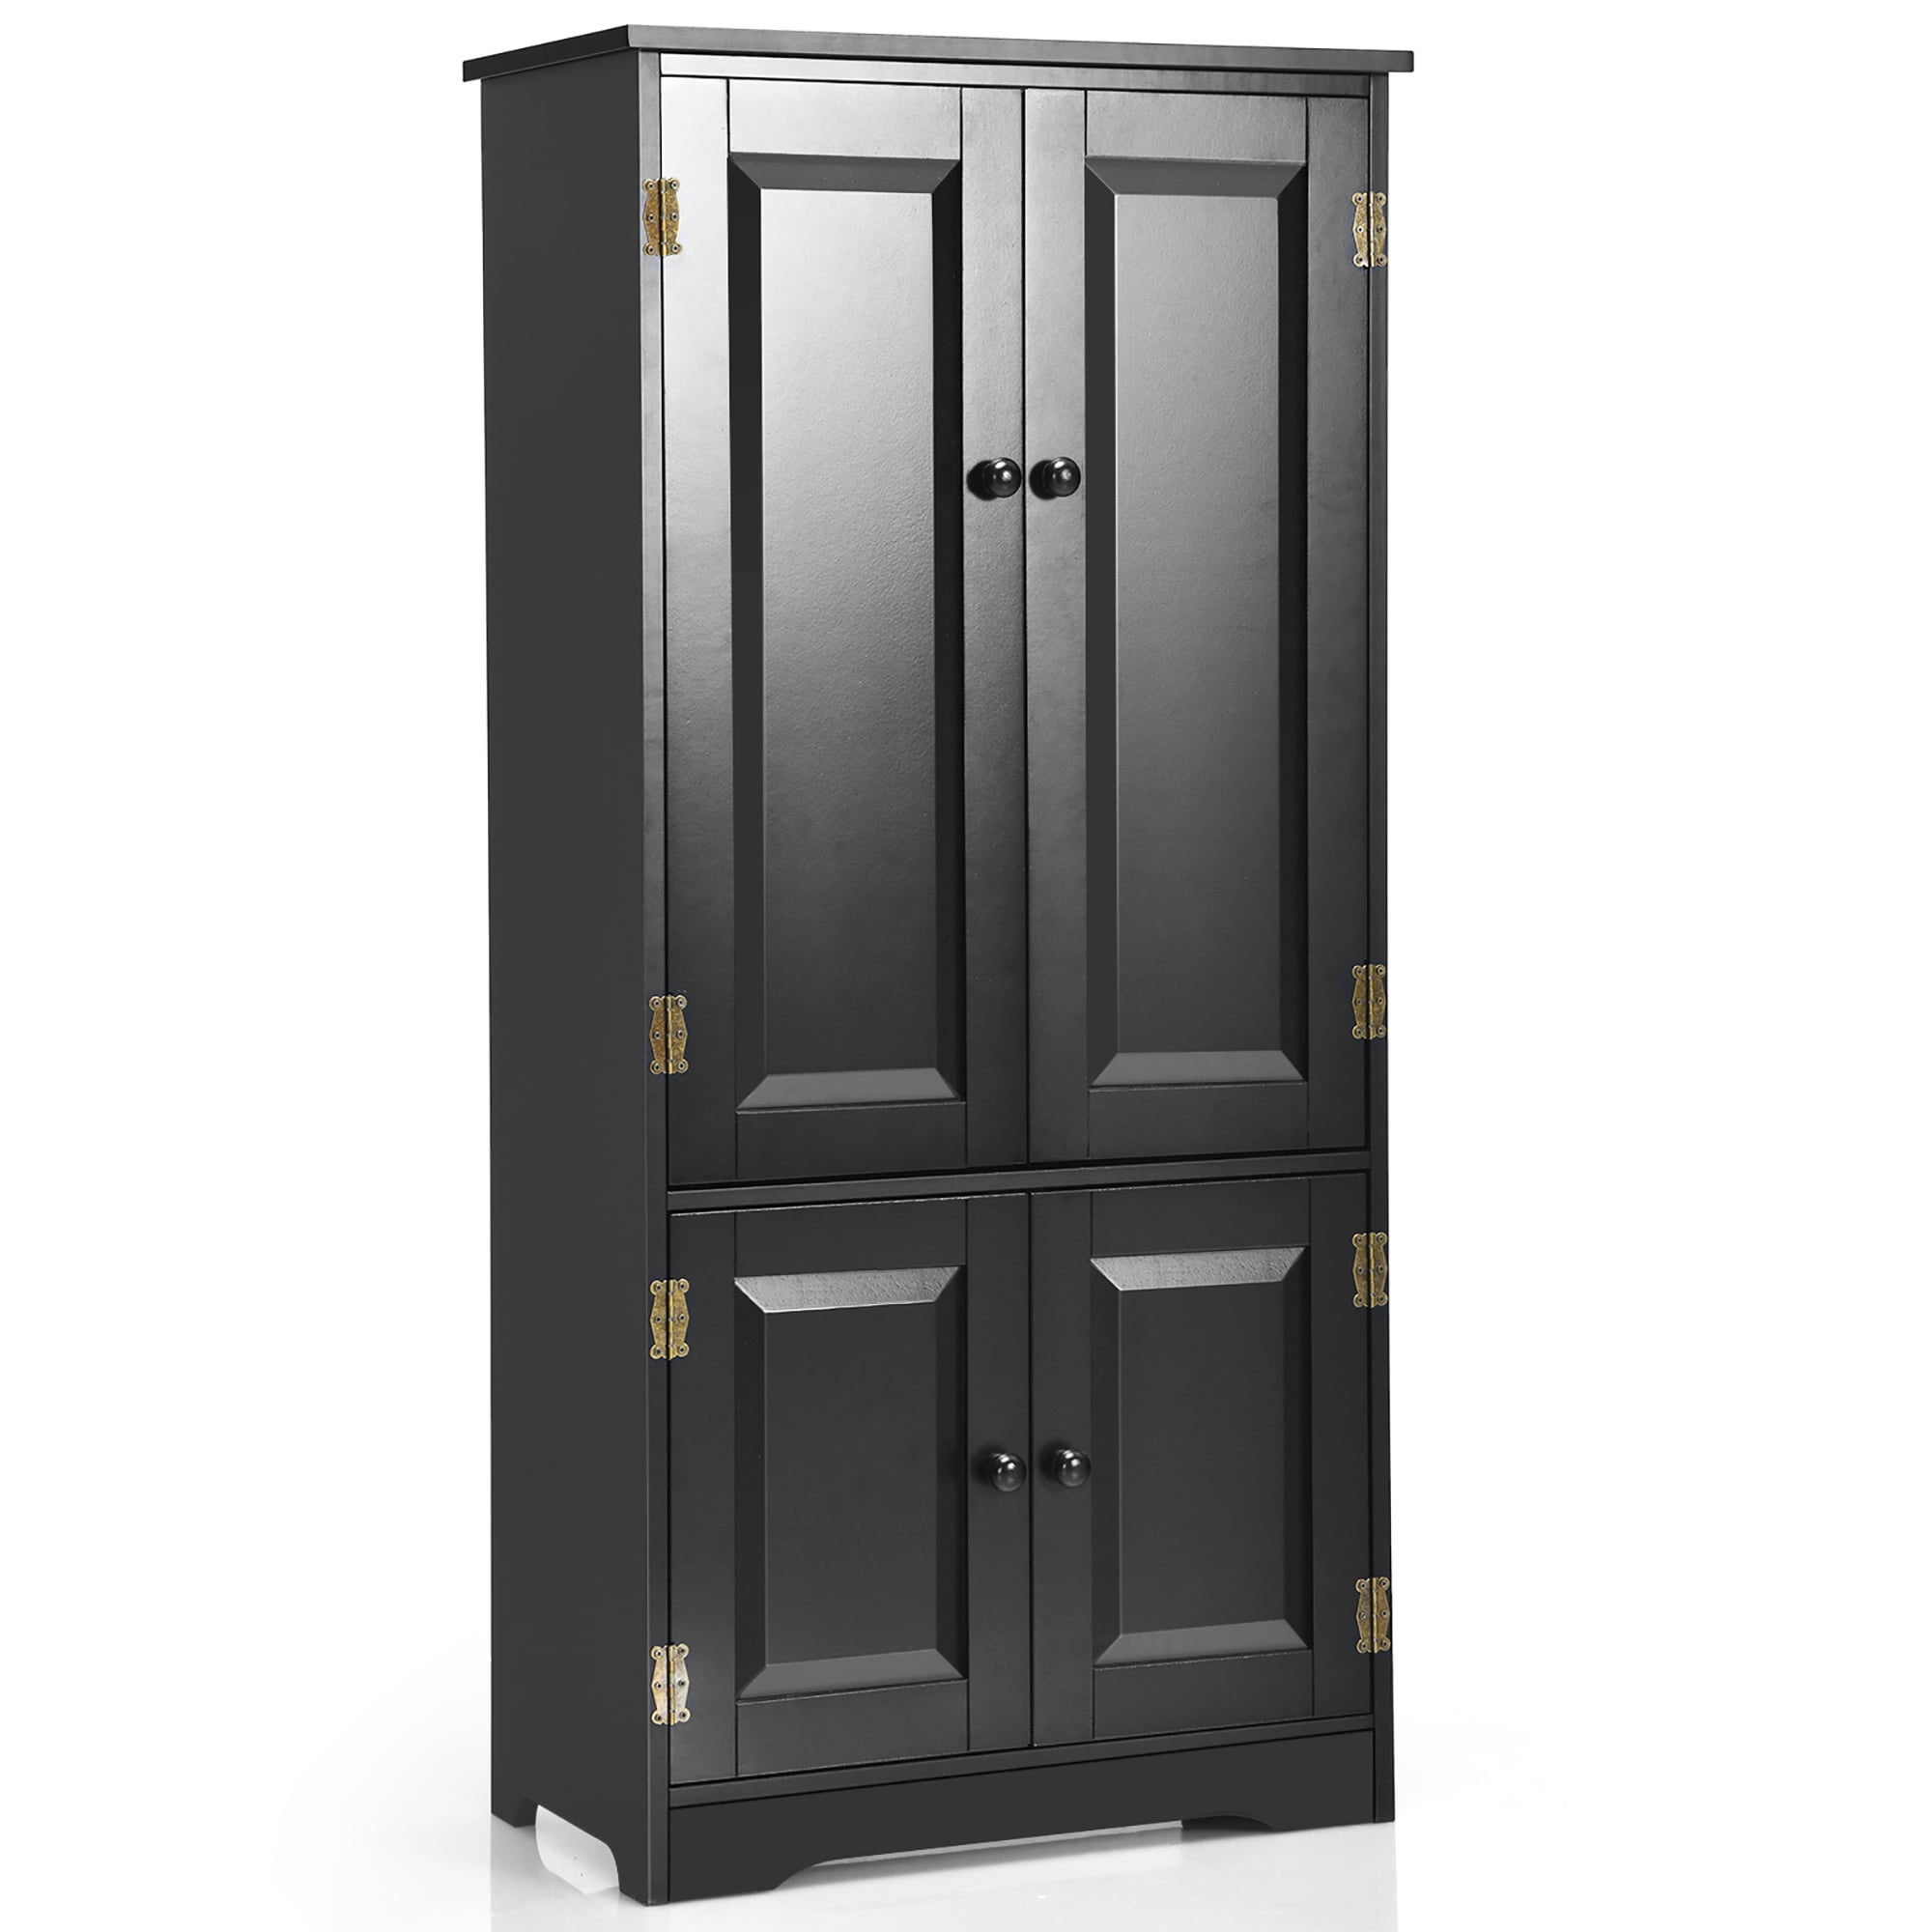 White Giantex Accent Floor Storage Cabinet Adjustable Shelves Antique 2-Door Low Floor Cabinet Pantry 24 Lx13 Wx49H 